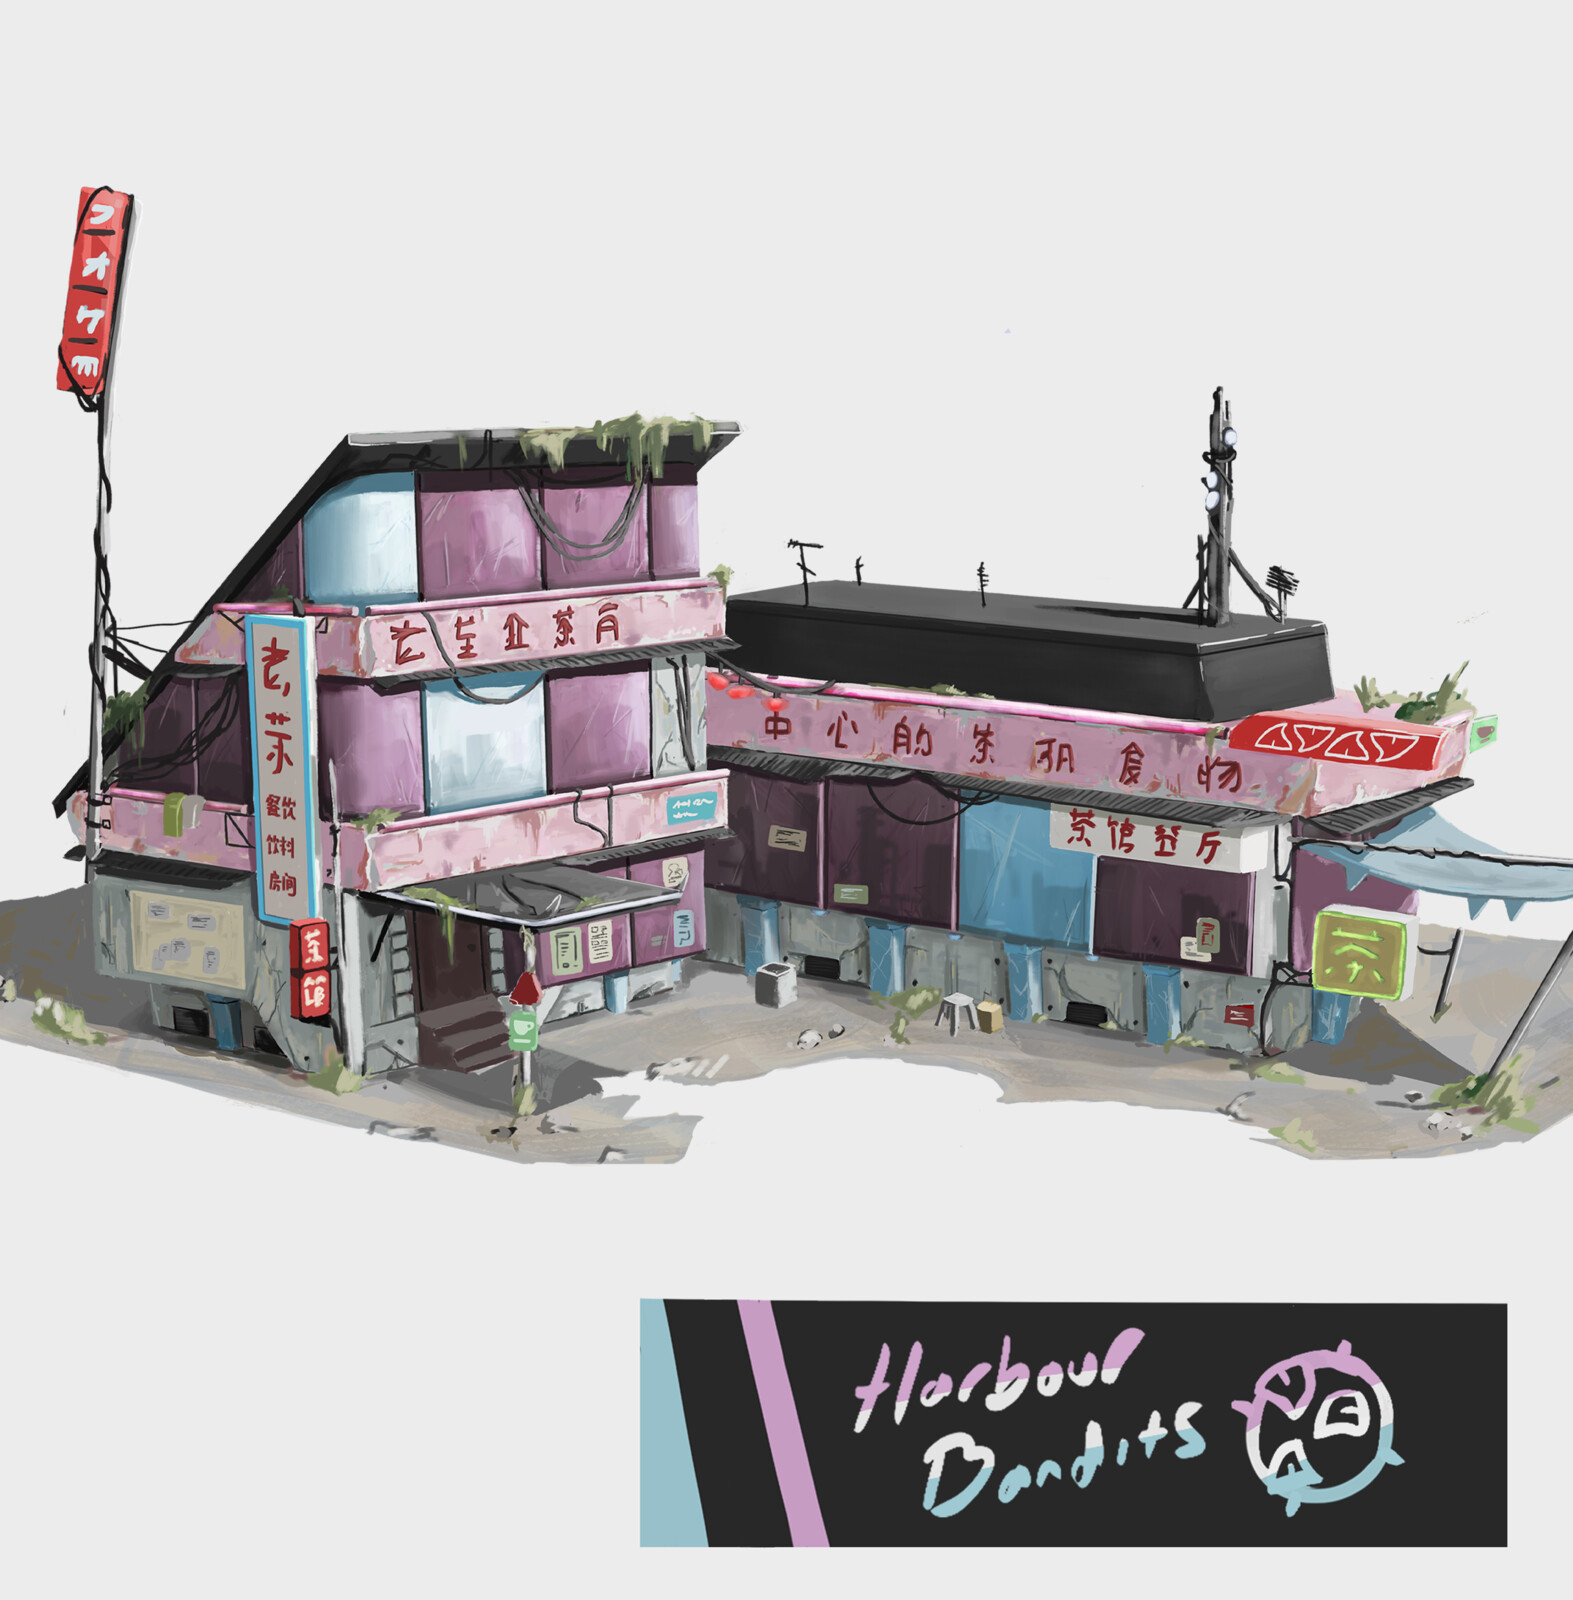 Harbour Bandits - Tea House (Building Concept + UI)